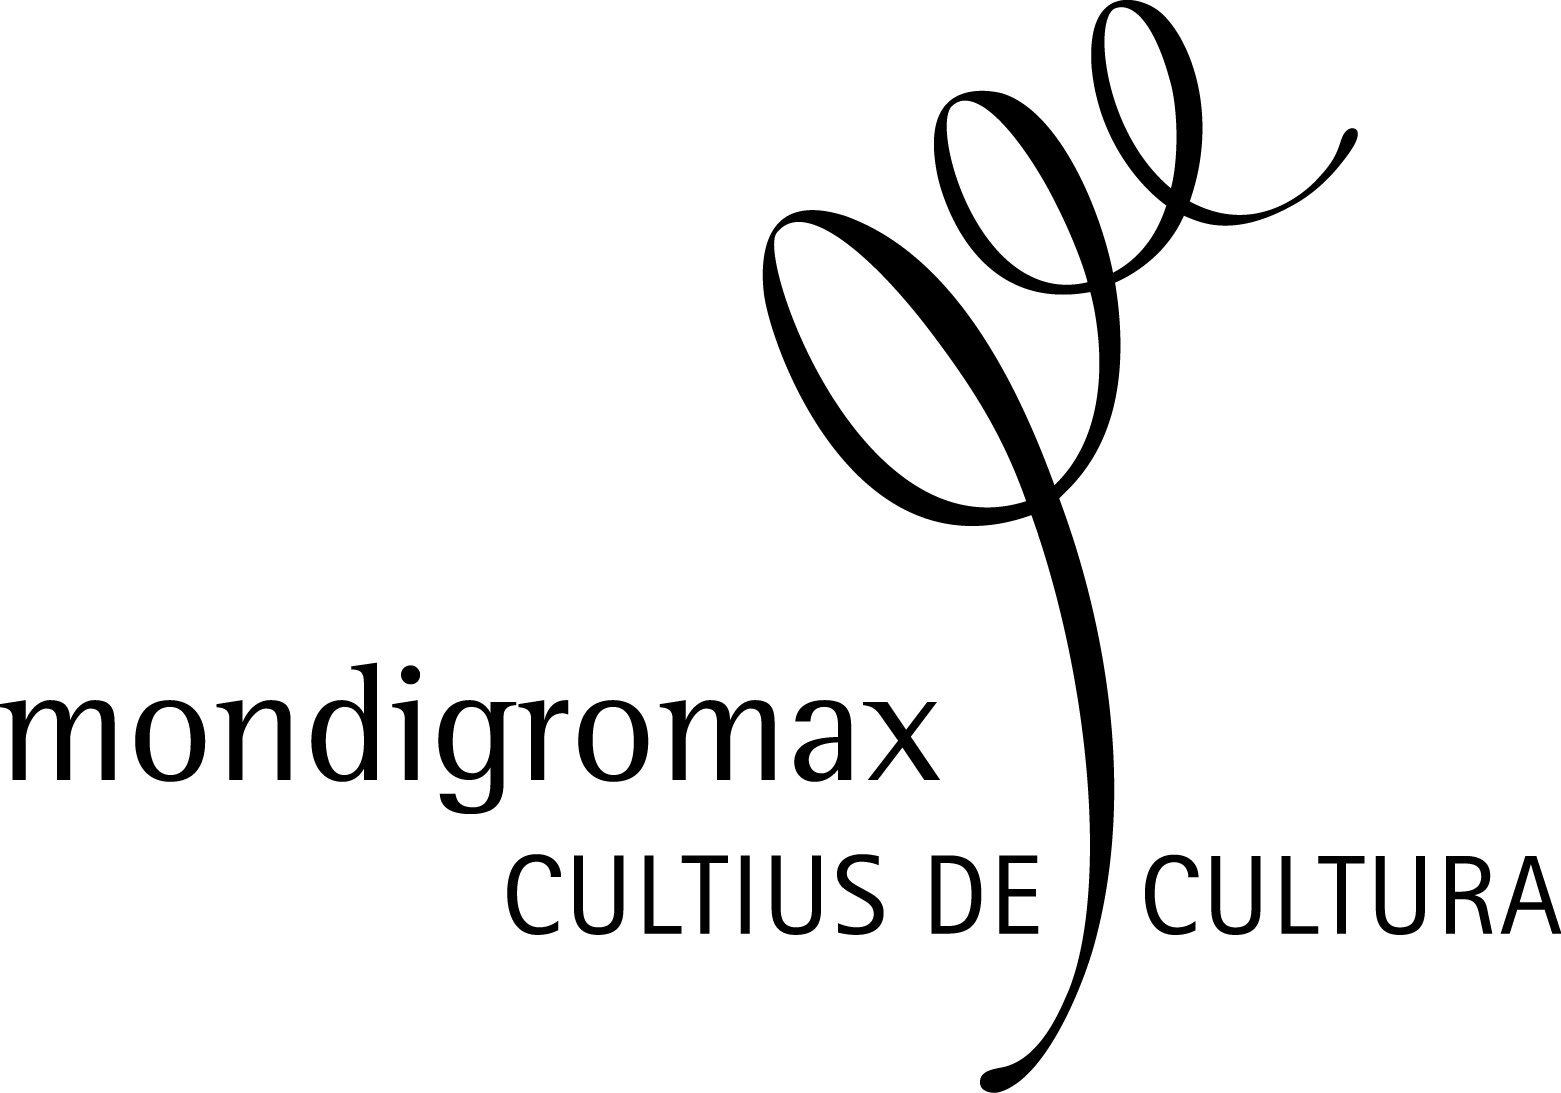 MONDIGROMAX - CULTIUS DE CULTURA